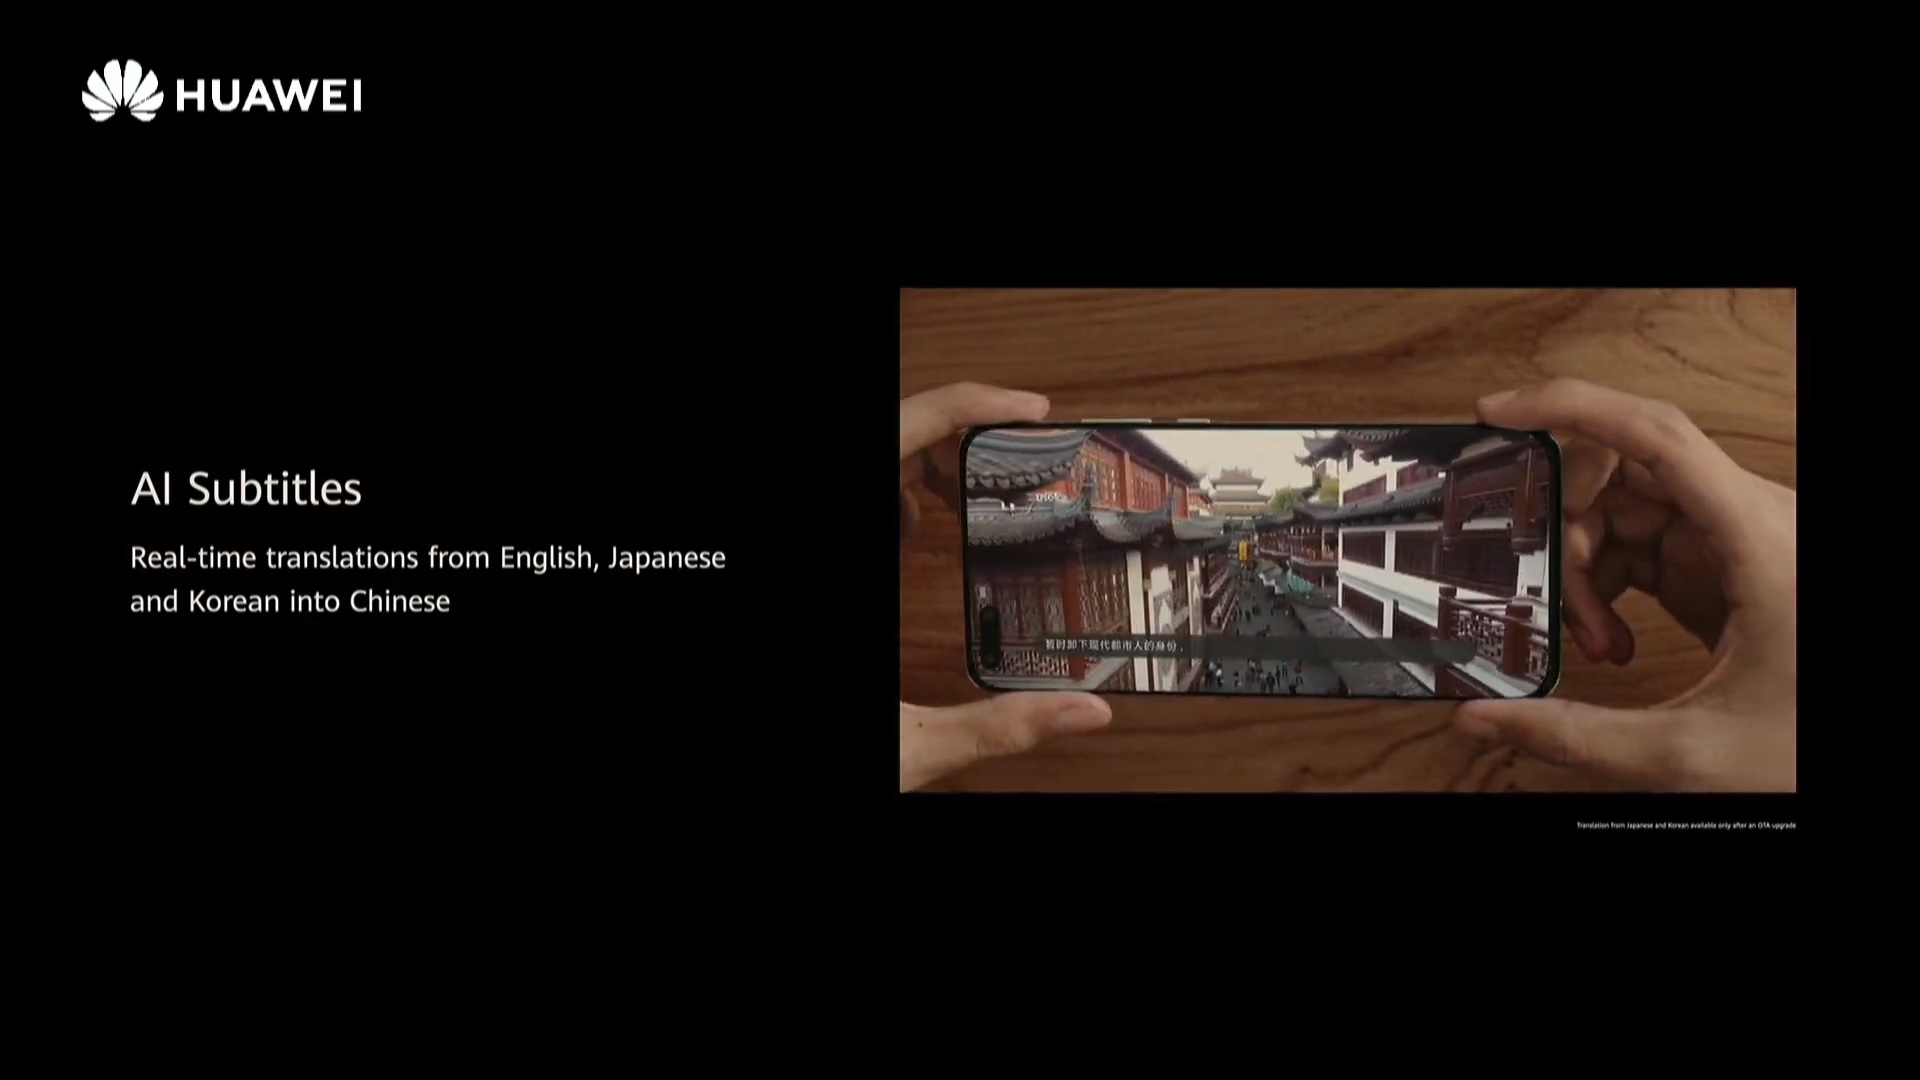 Huawei EMUI 11 AI Subtitles